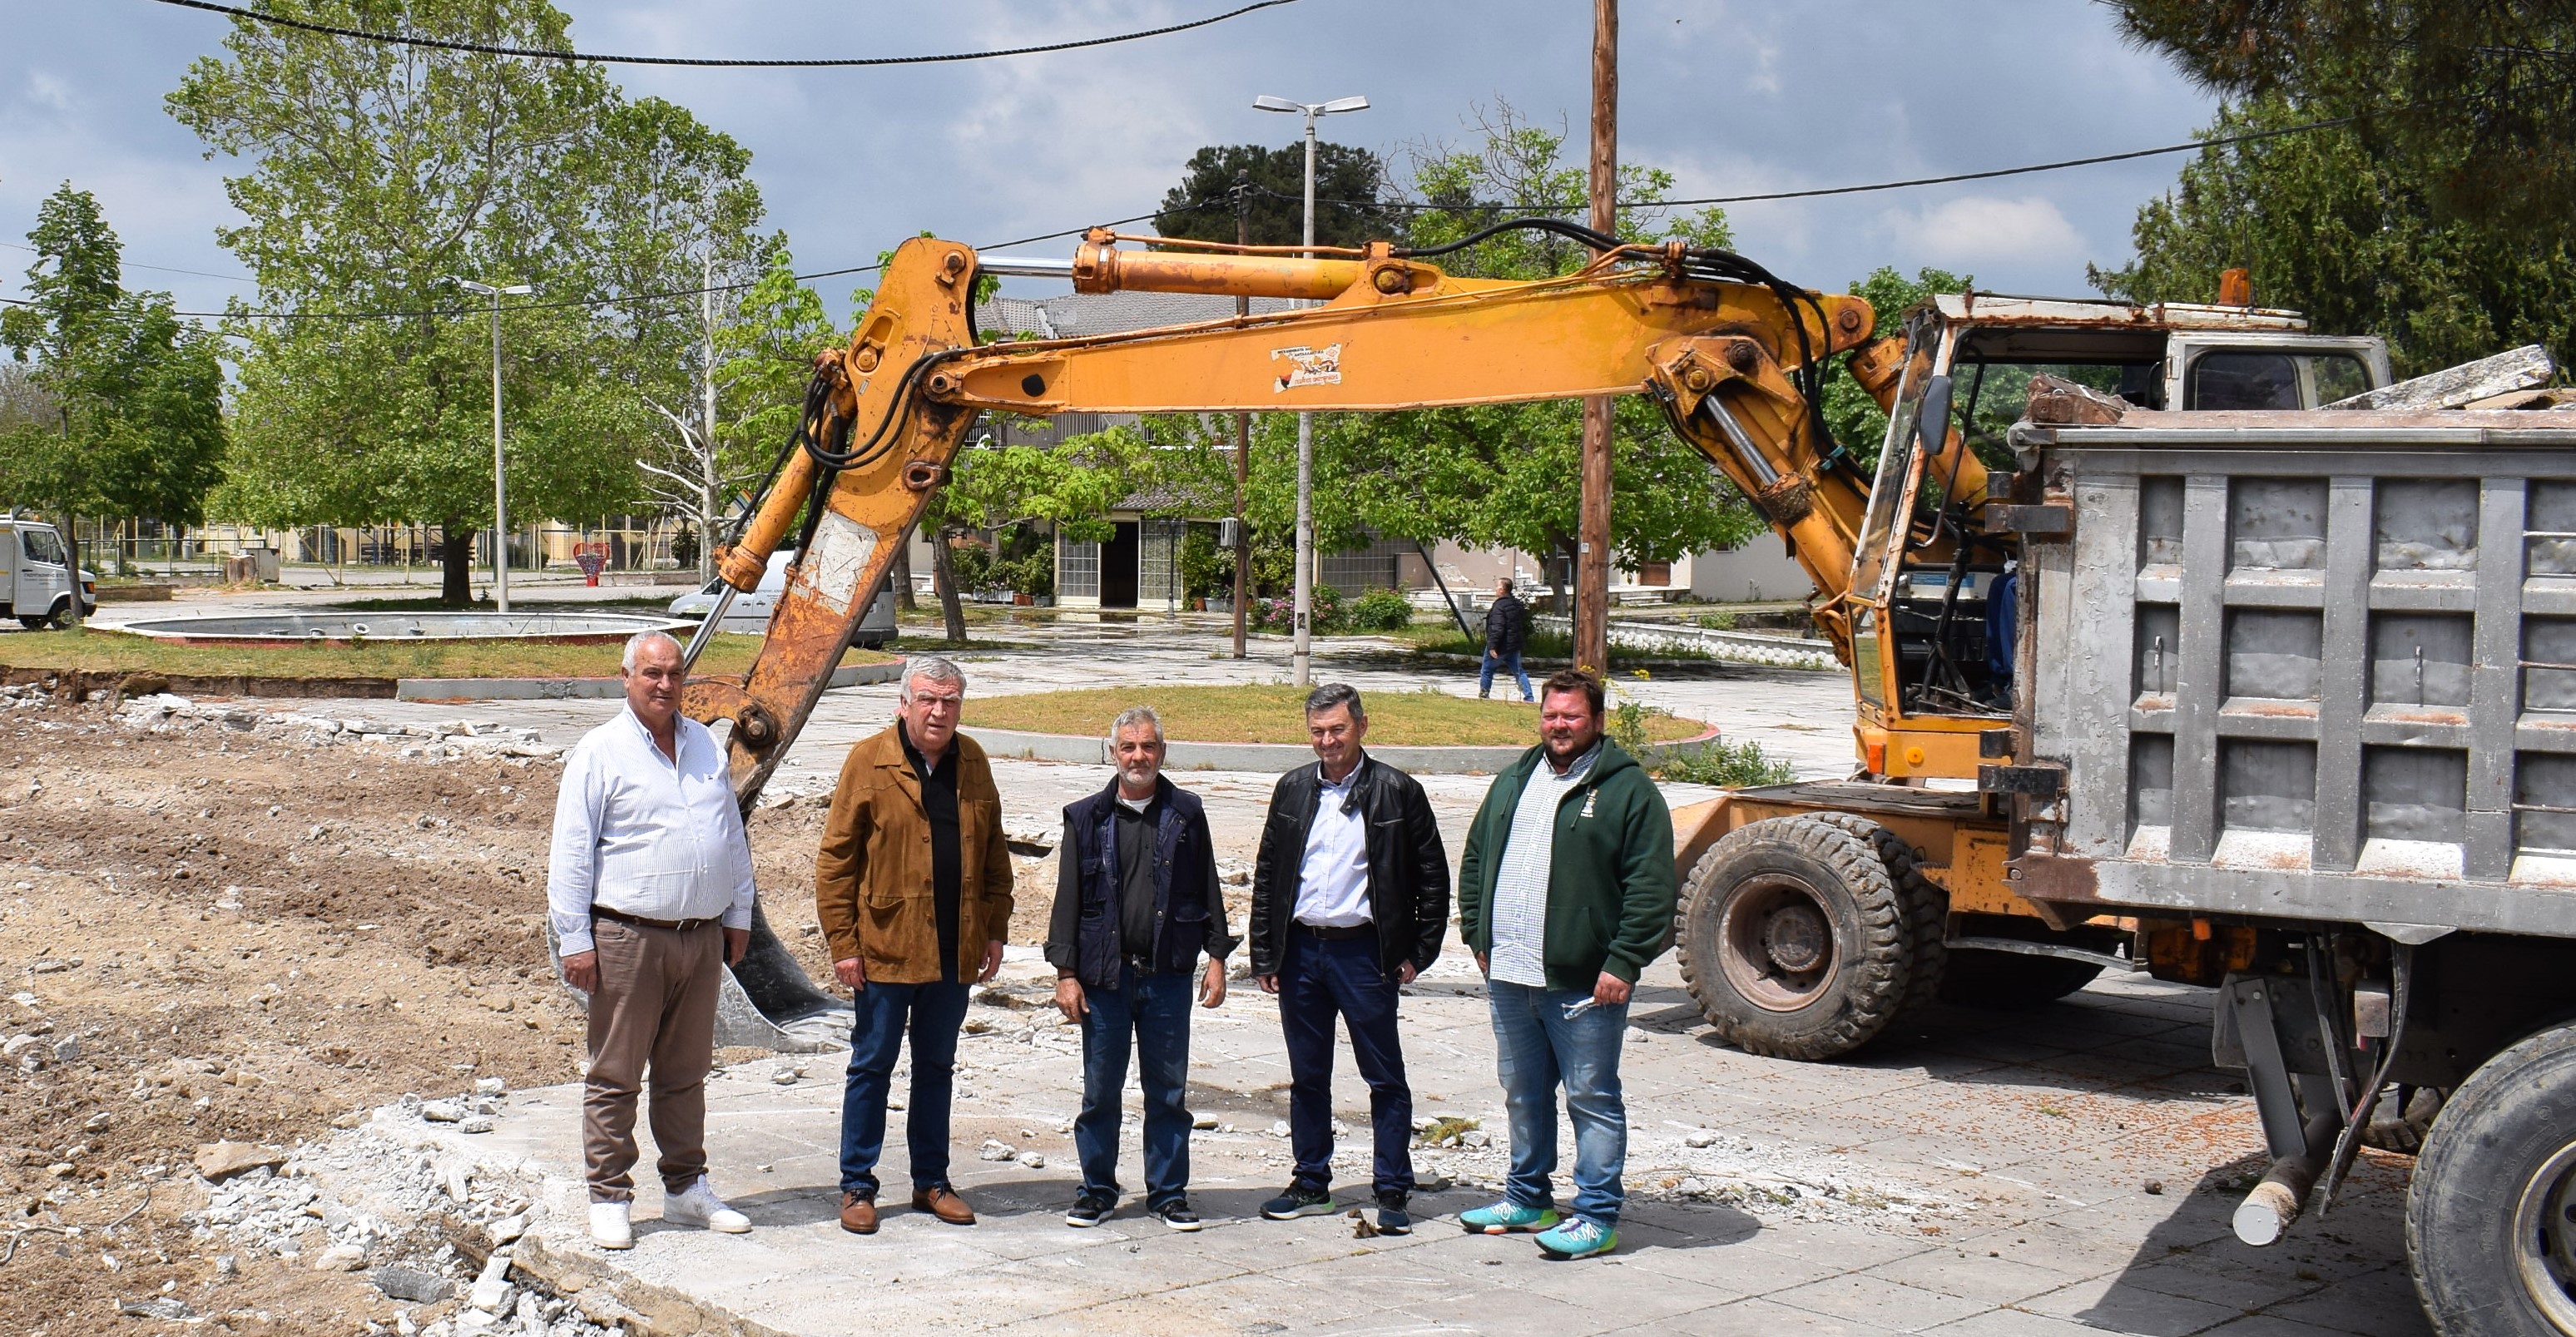 Δήμος Κιλελέρ: Ανακατασκευάζεται η πλατεία Μελισσοχωρίου